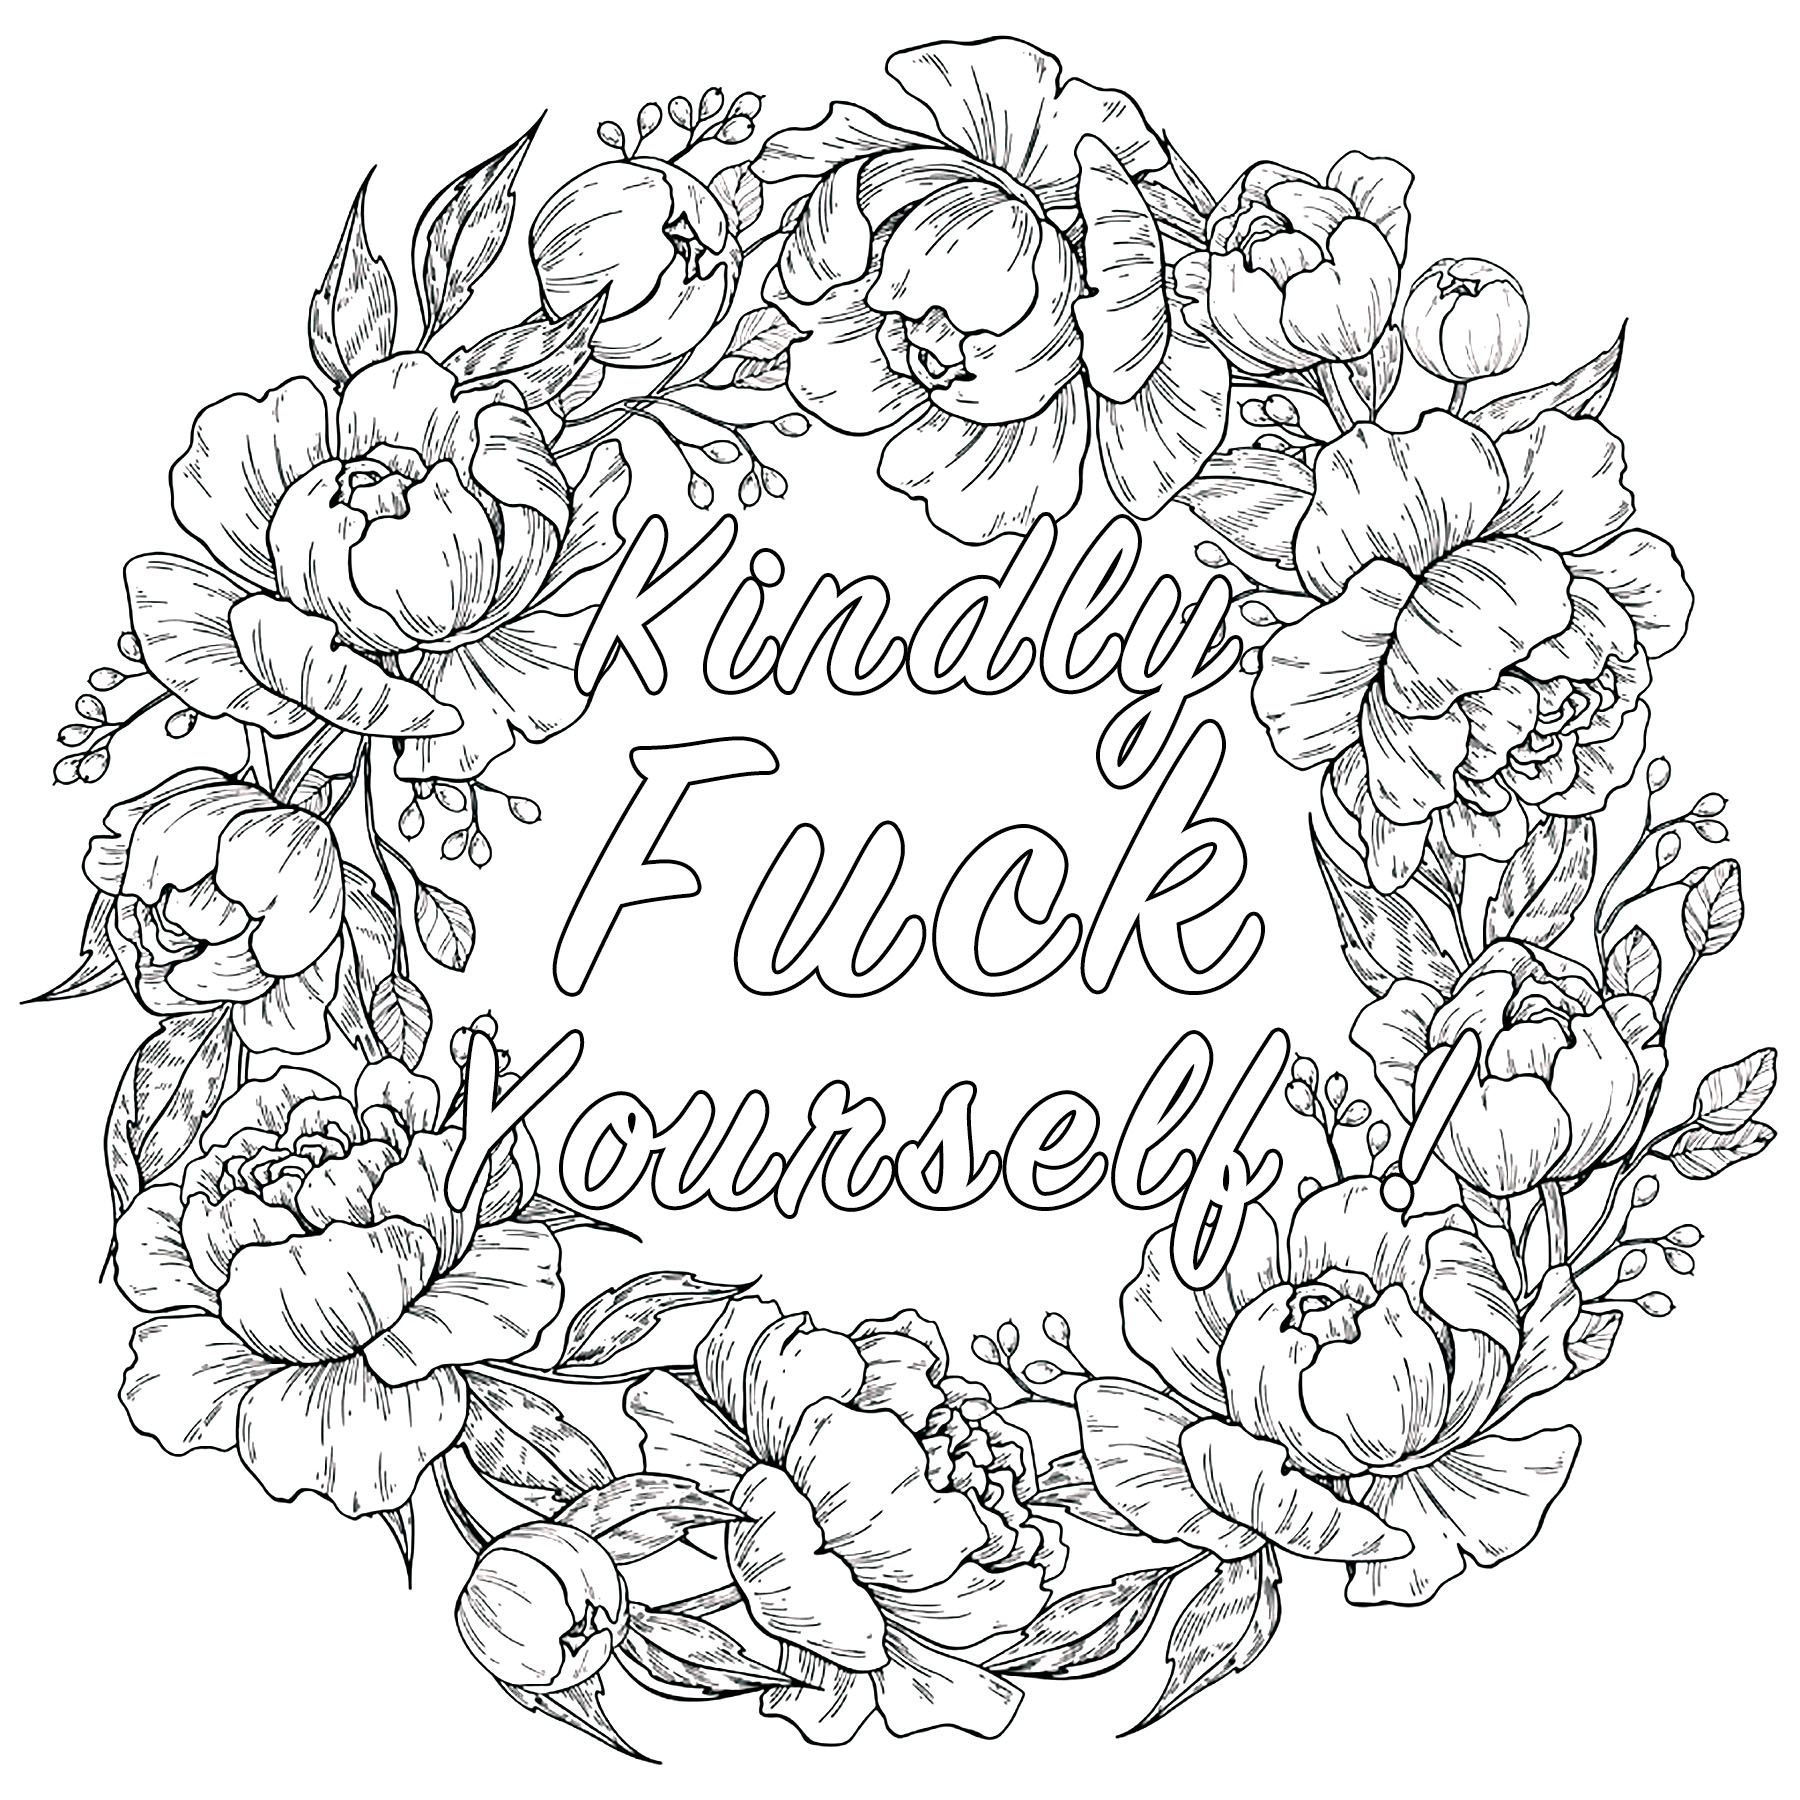 Kindly Fuck Yourself : Pagina di parolacce da colorare con corona fiorita